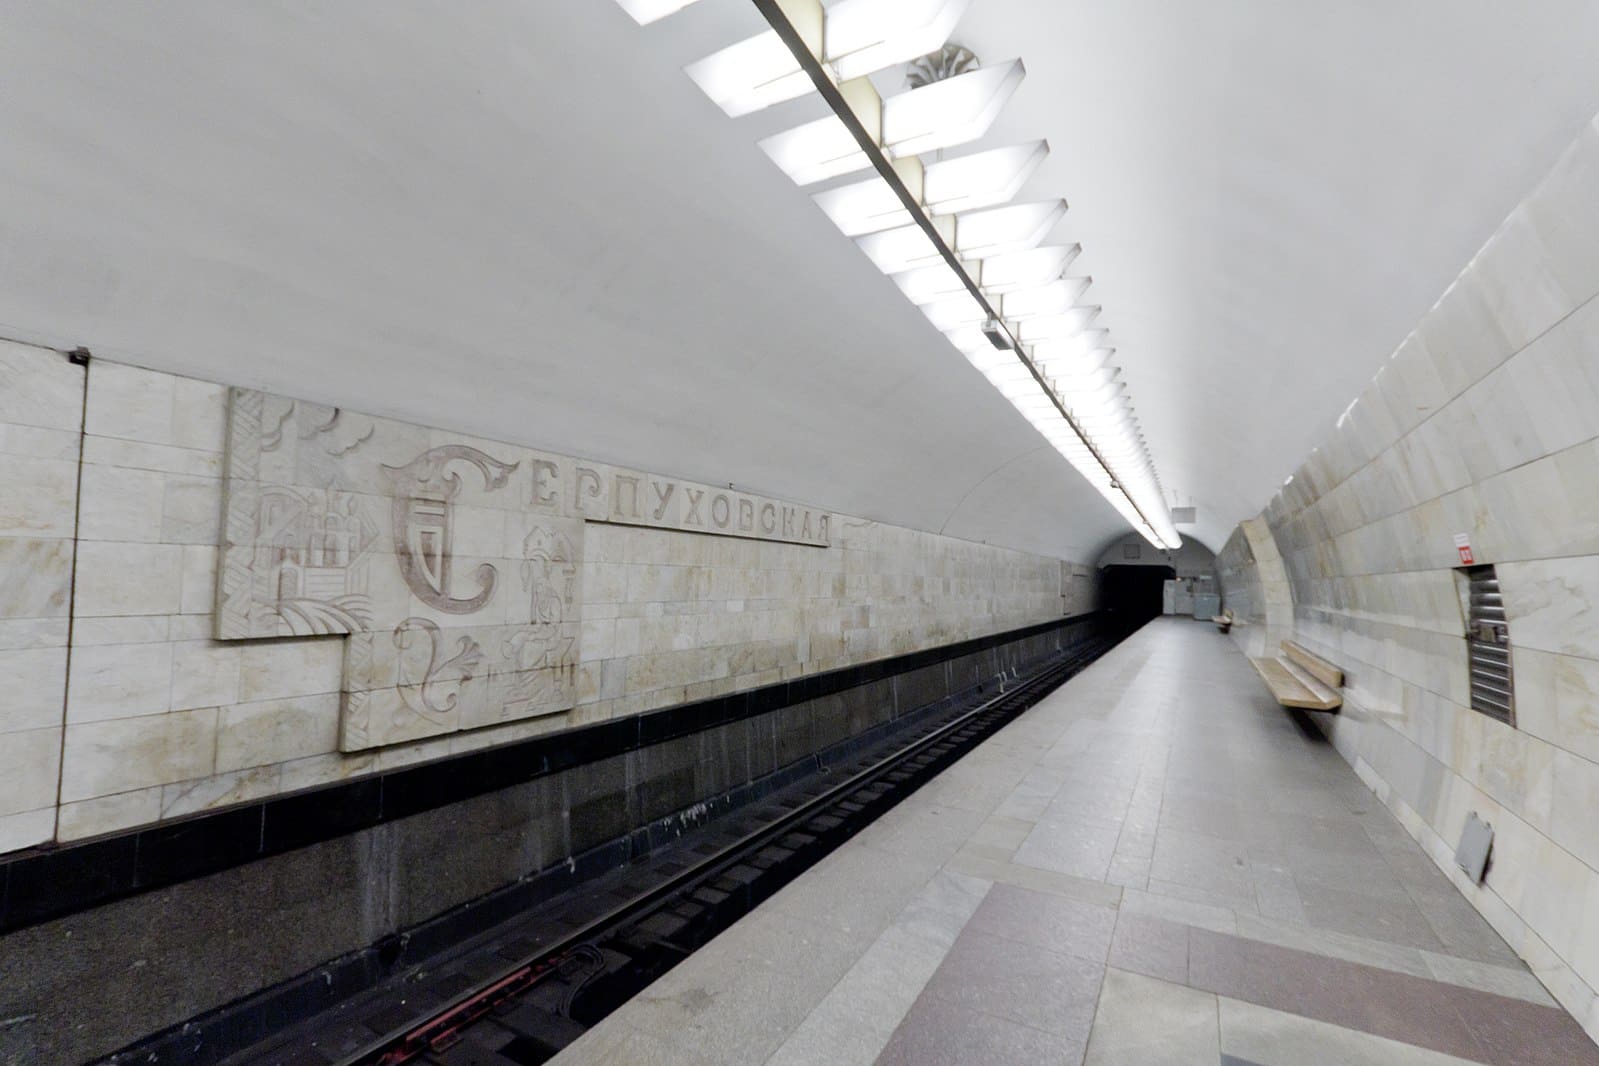 Cтанция метро «Серпуховская» 